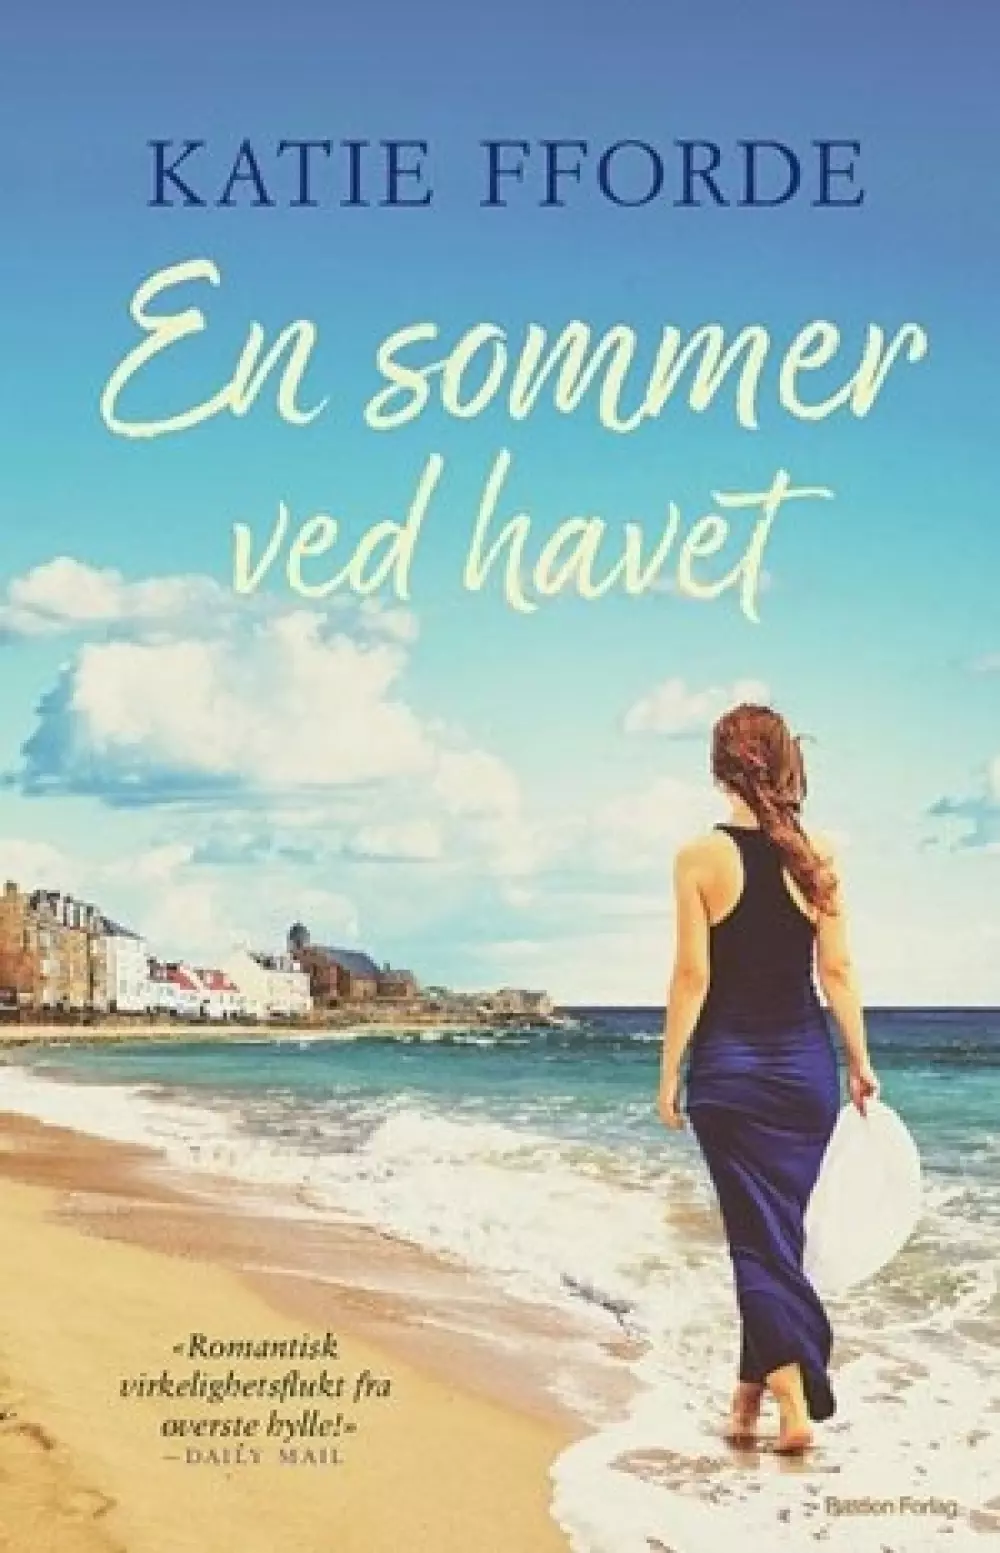 En sommer ved havet (Pocket), 9788283131901, Pocket, Katie Fforde - Pocket norsk